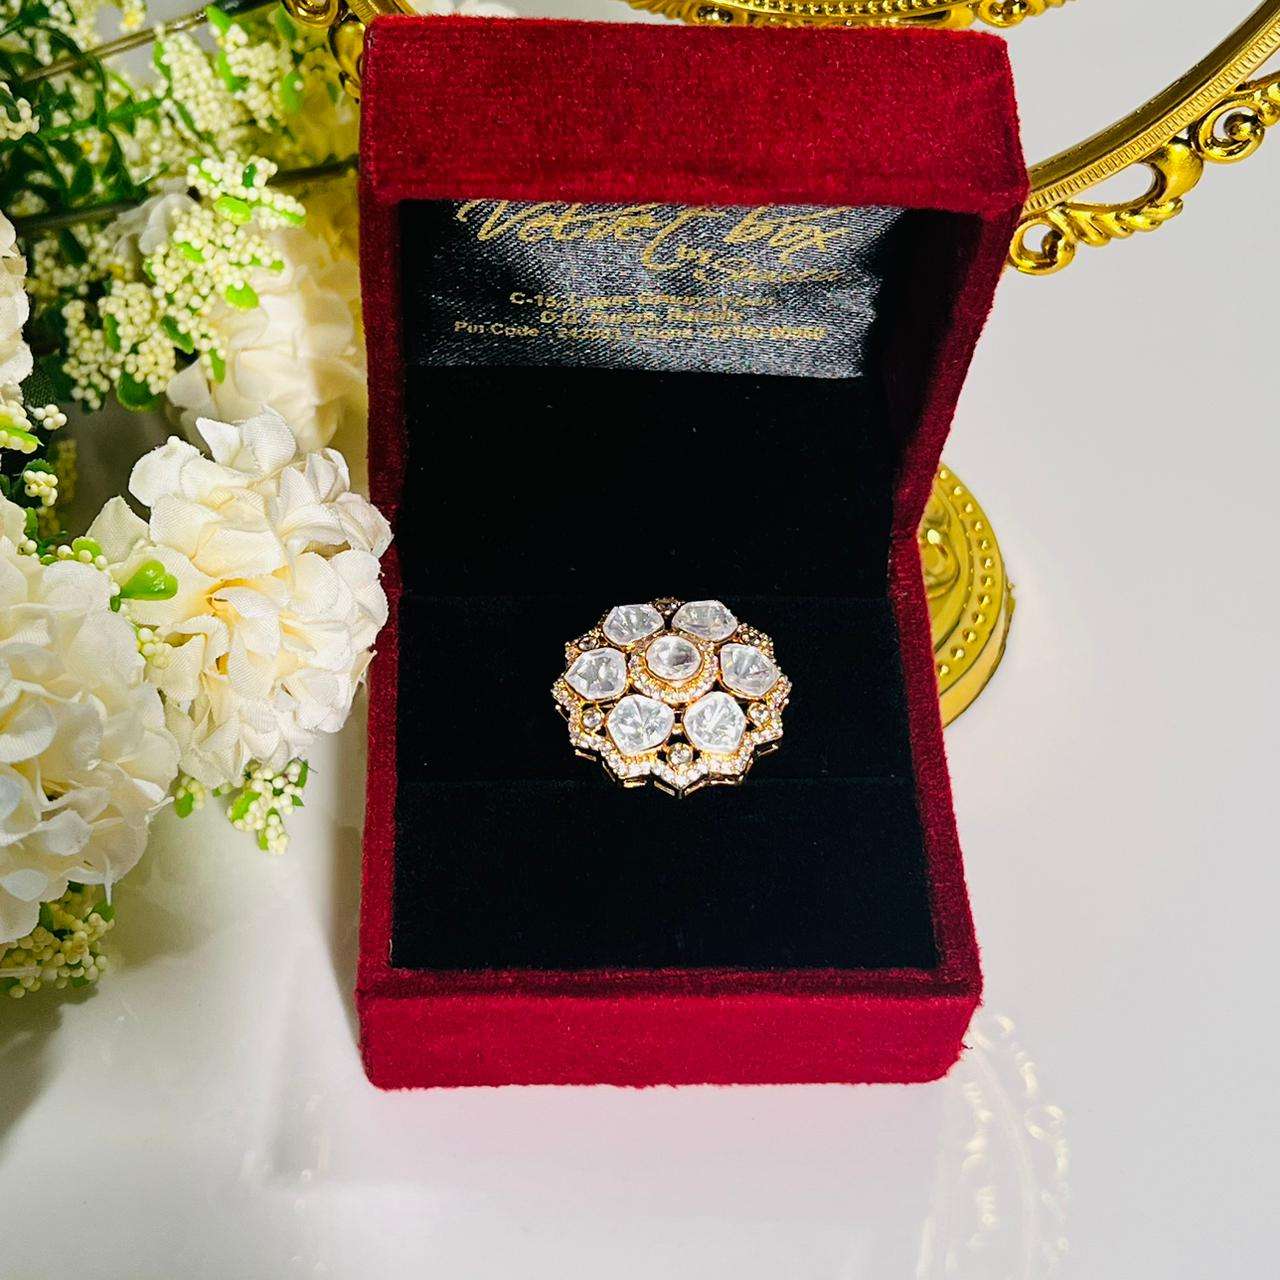 Nayaab rosie ring velvet box by shweta